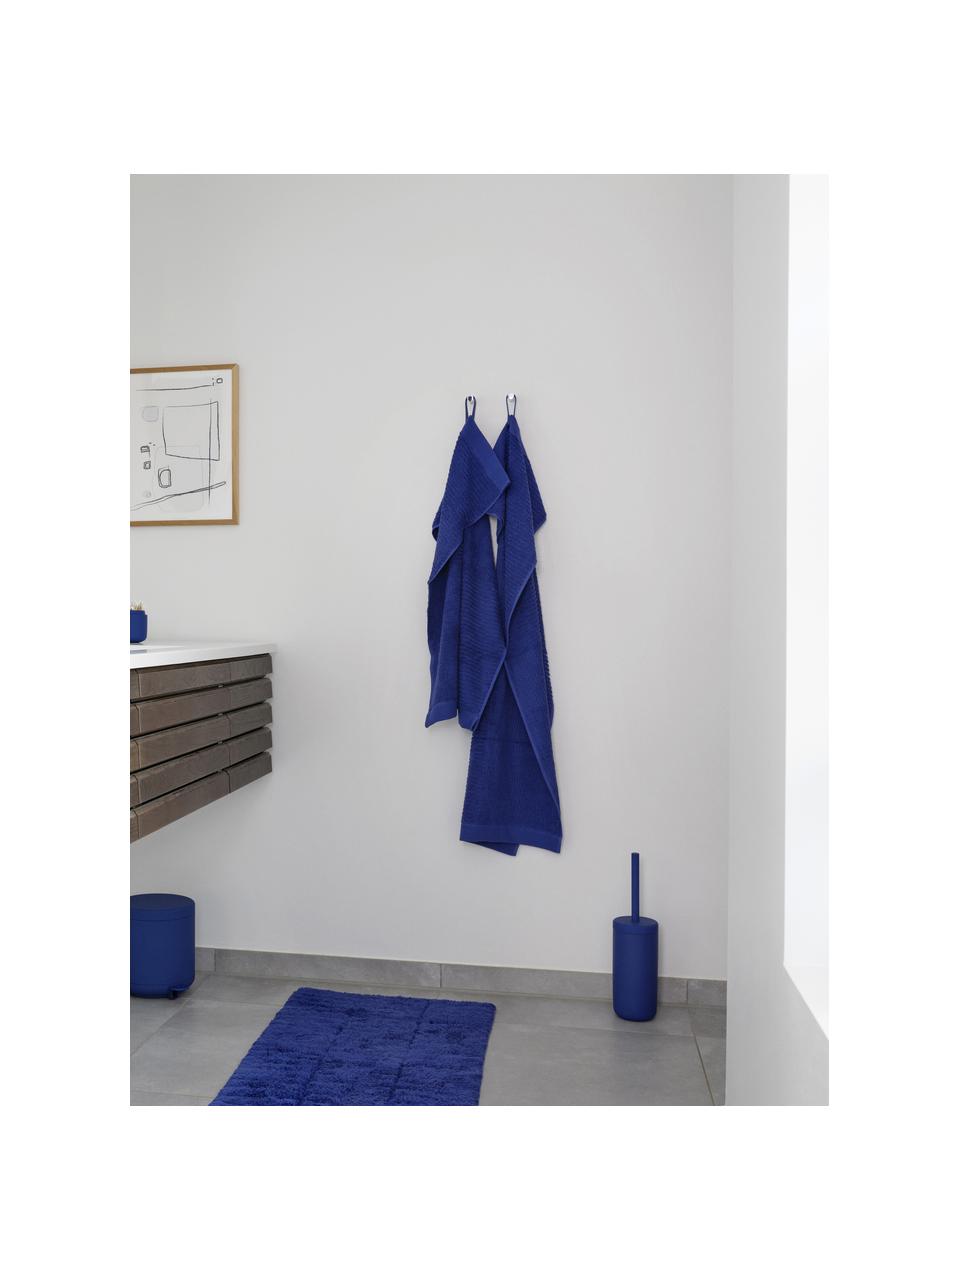 Toilettenbürste Ume mit Behälter, Behälter: Steingut überzogen mit So, Griff: Kunststoff, Royalblau, Ø 10 x H 39 cm